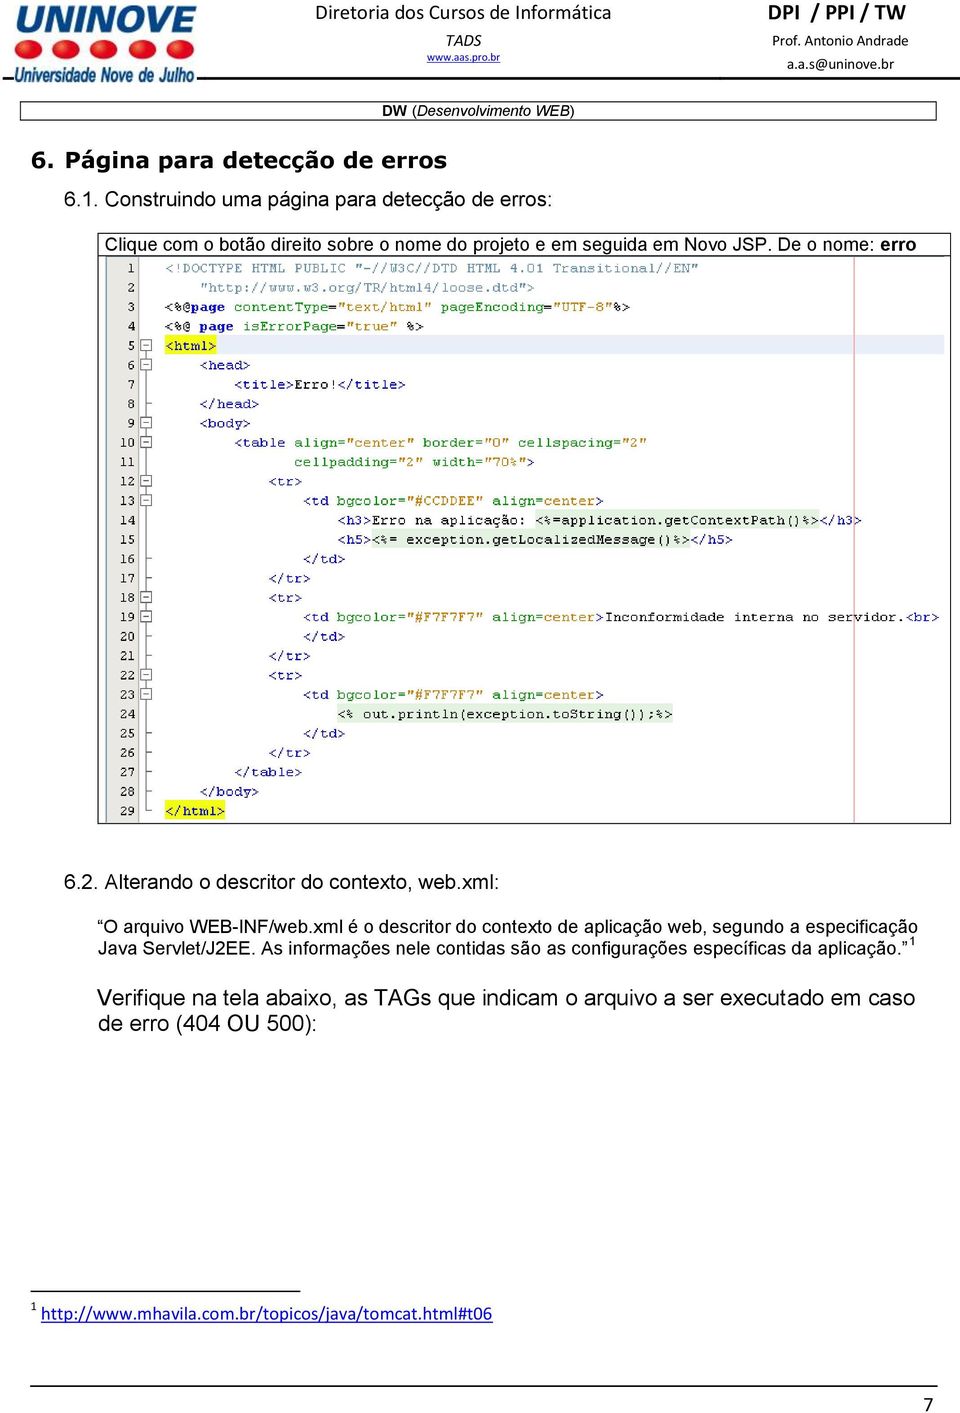 Alterando o descritor do contexto, web.xml: O arquivo WEB-INF/web.